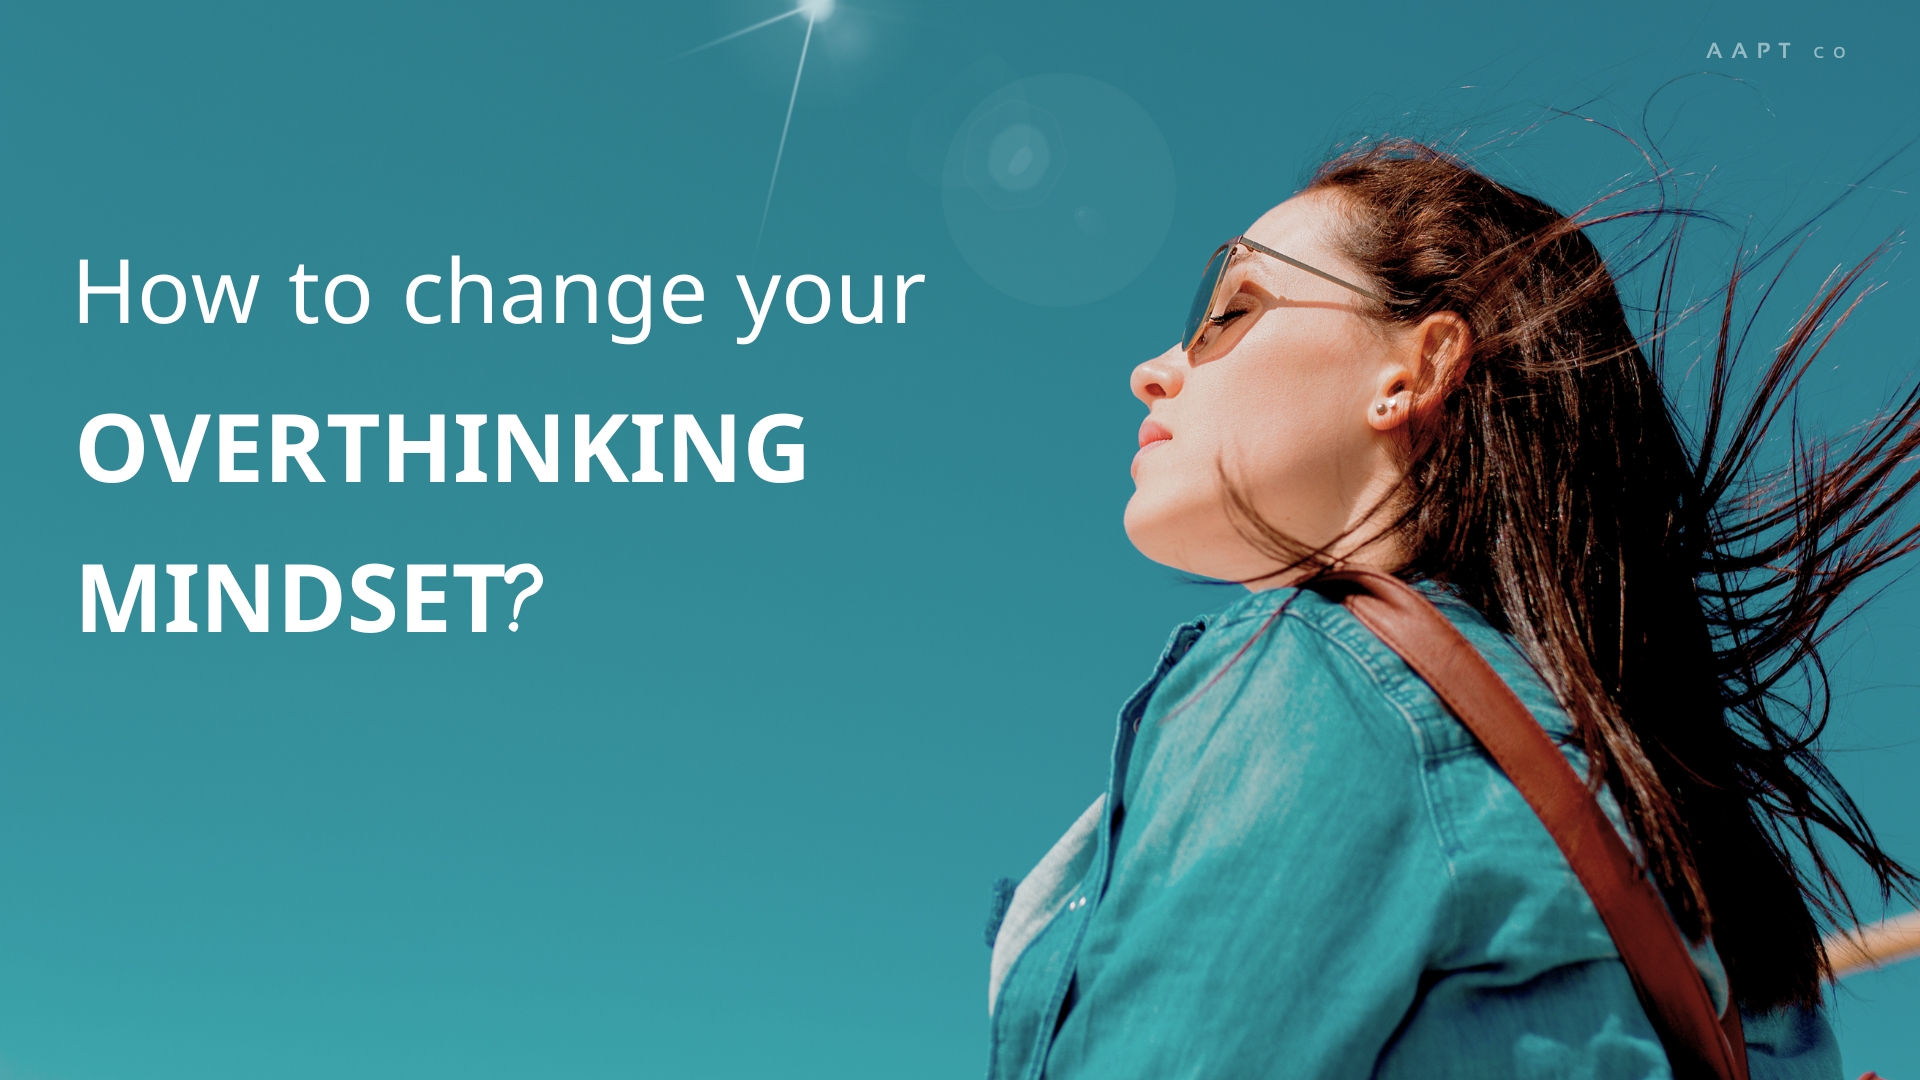 How to change your overthinking mindset?